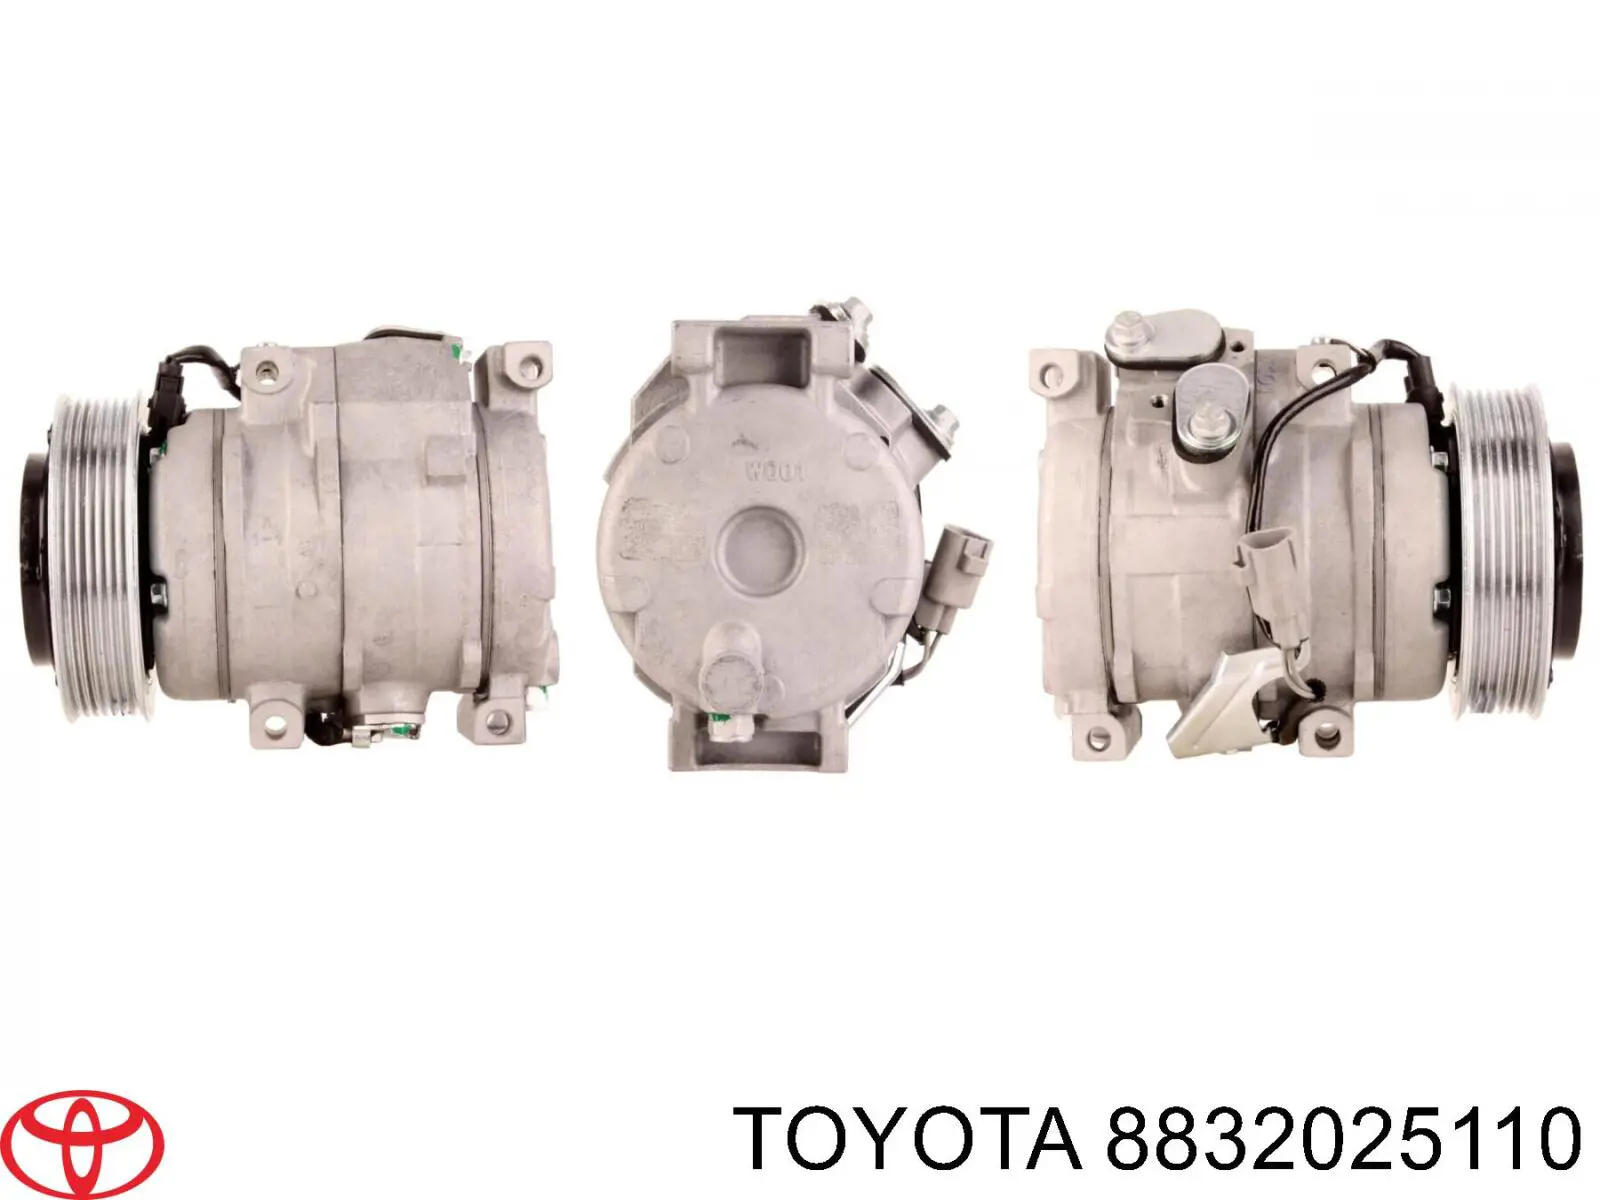 Compresor climatizador para Toyota Hiace (H1, H2)